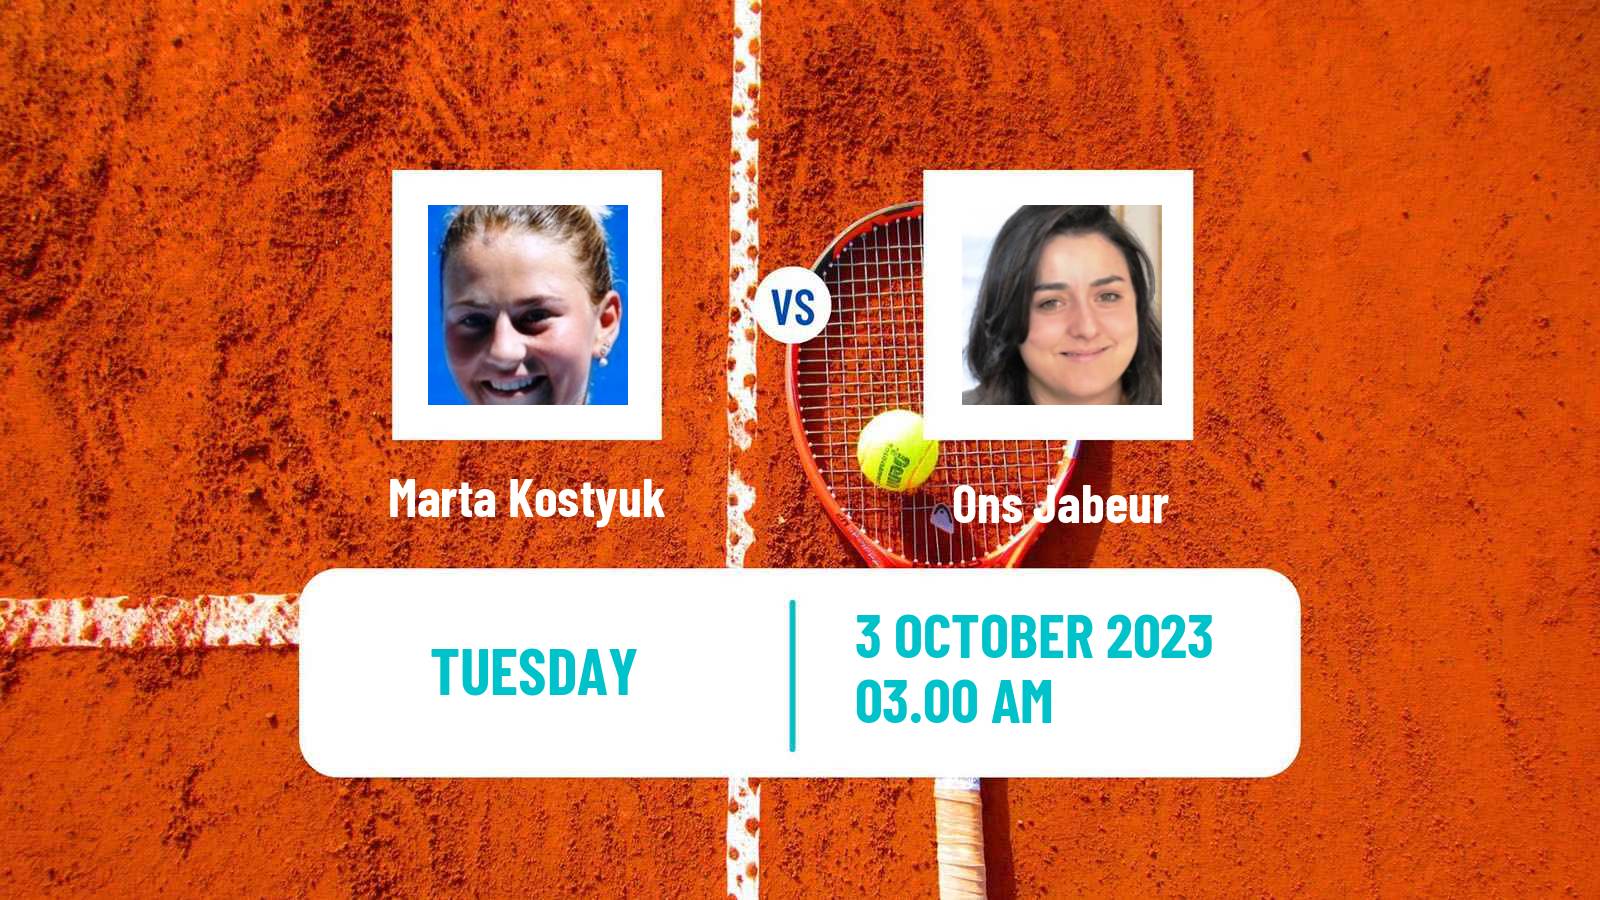 Tennis WTA Beijing Marta Kostyuk - Ons Jabeur